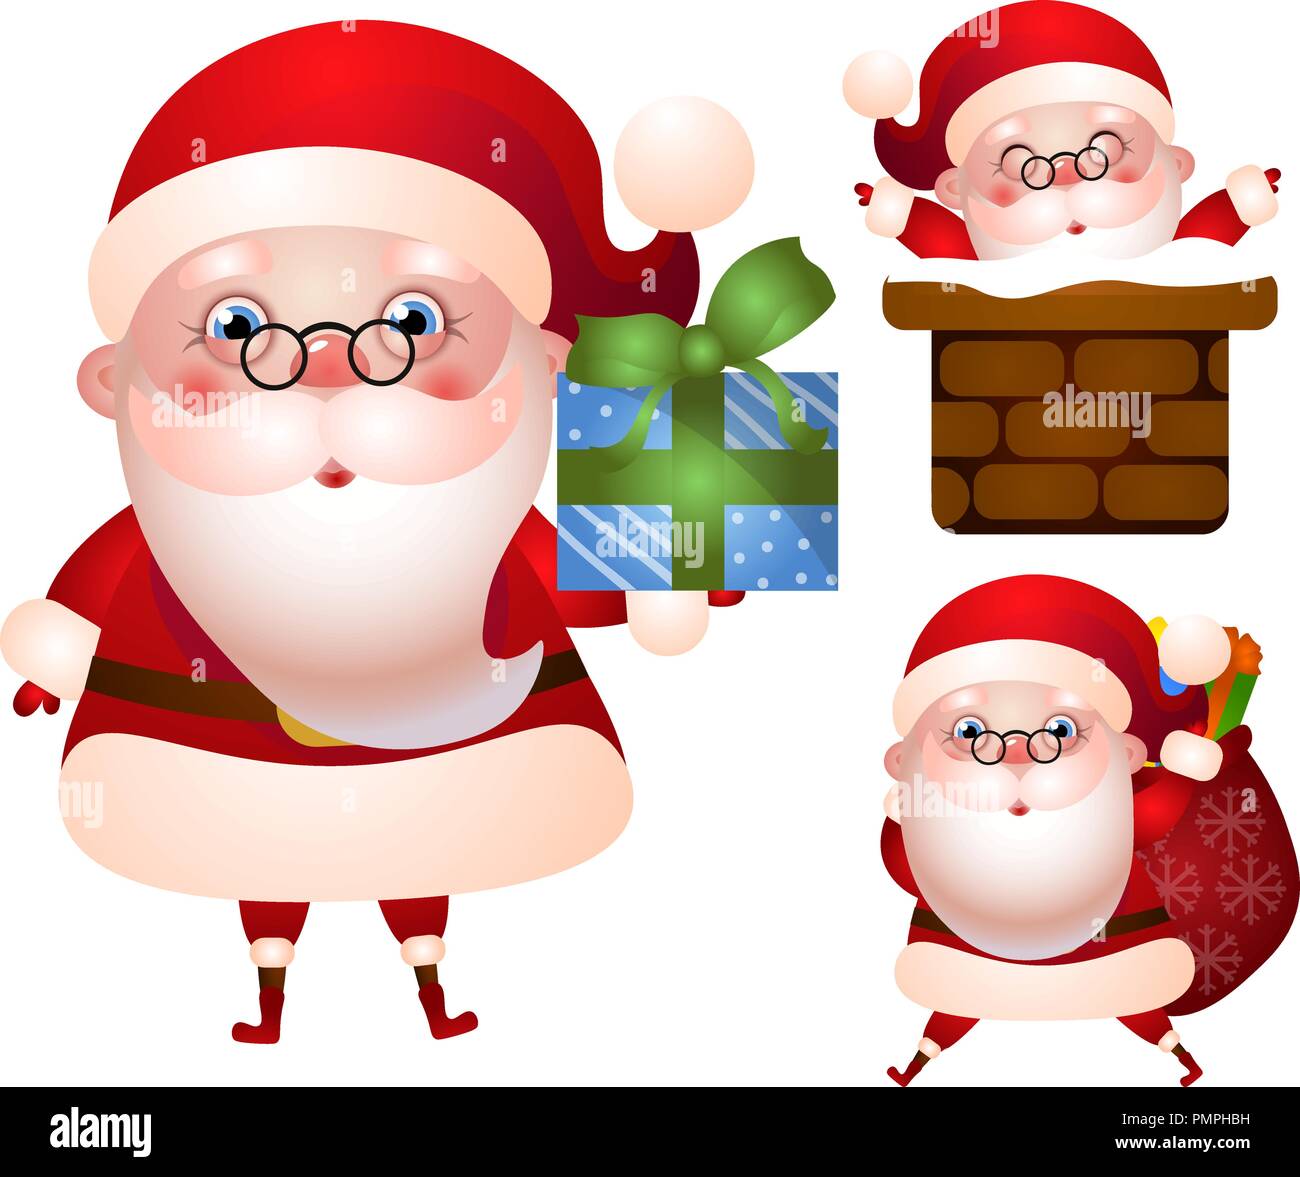 Set of xmas illustrations of Santa Claus character Stock Vector